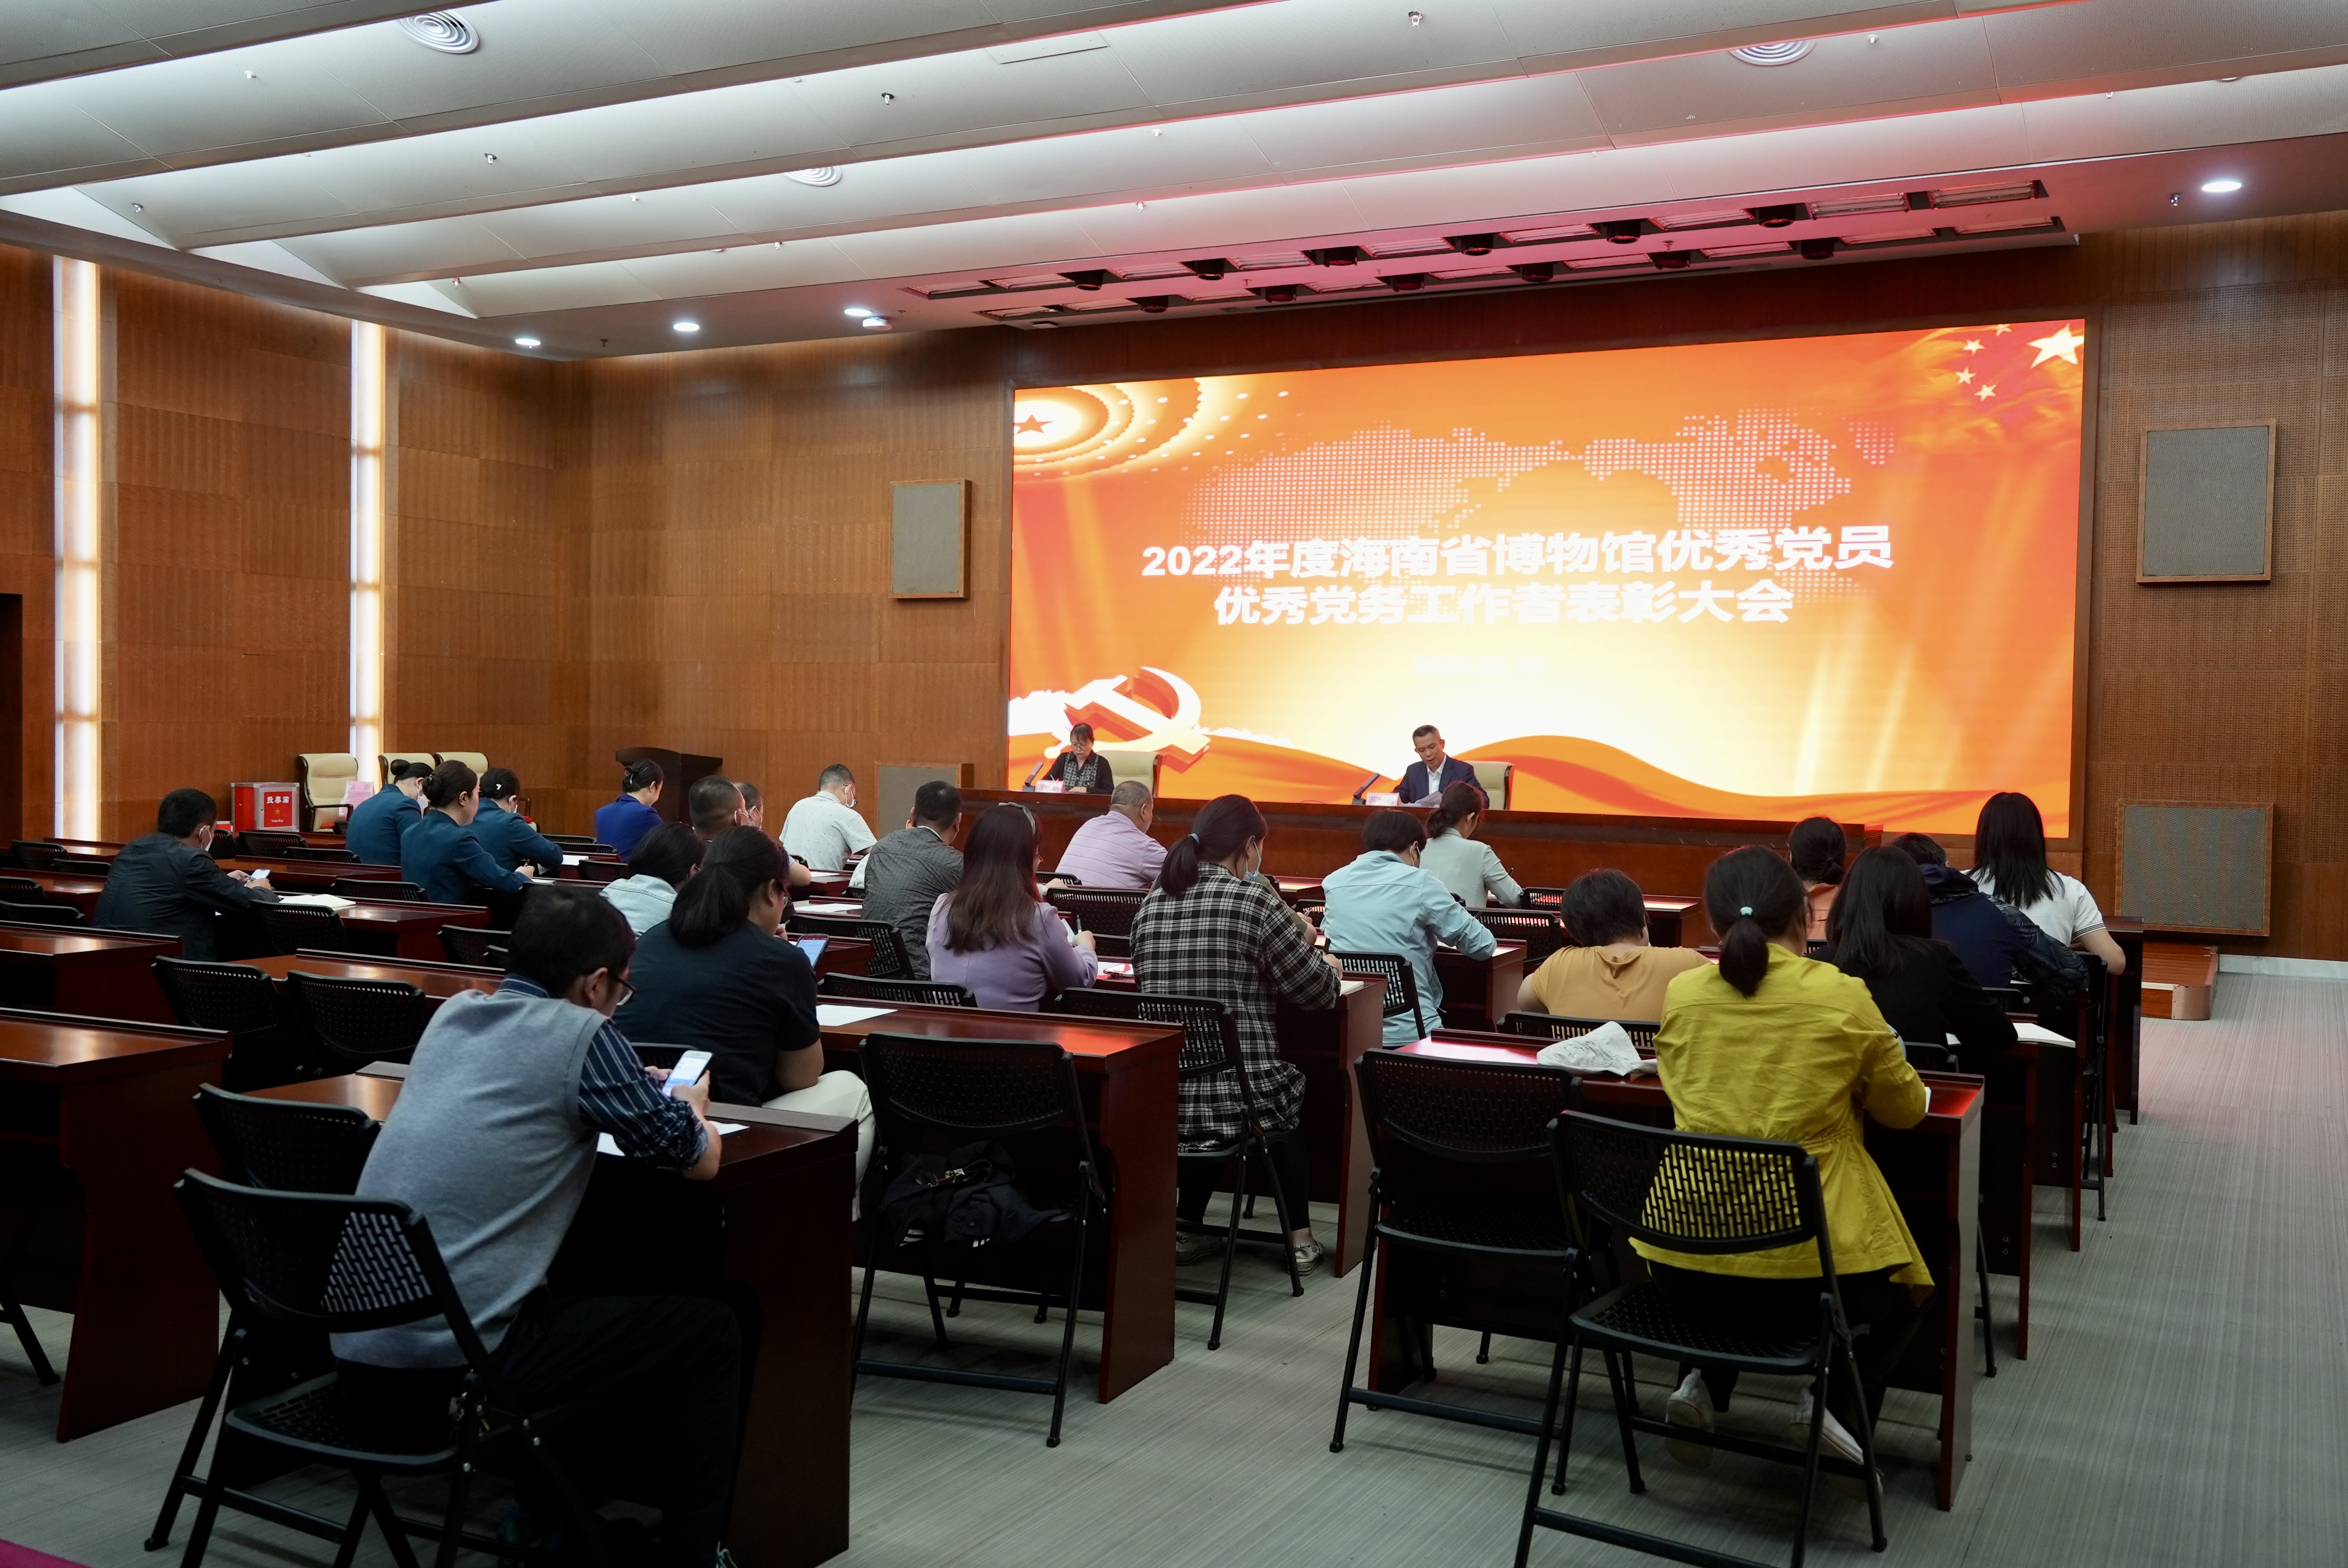 海南省博物馆举行2022年度优秀党员、优秀党务工作者表彰大会